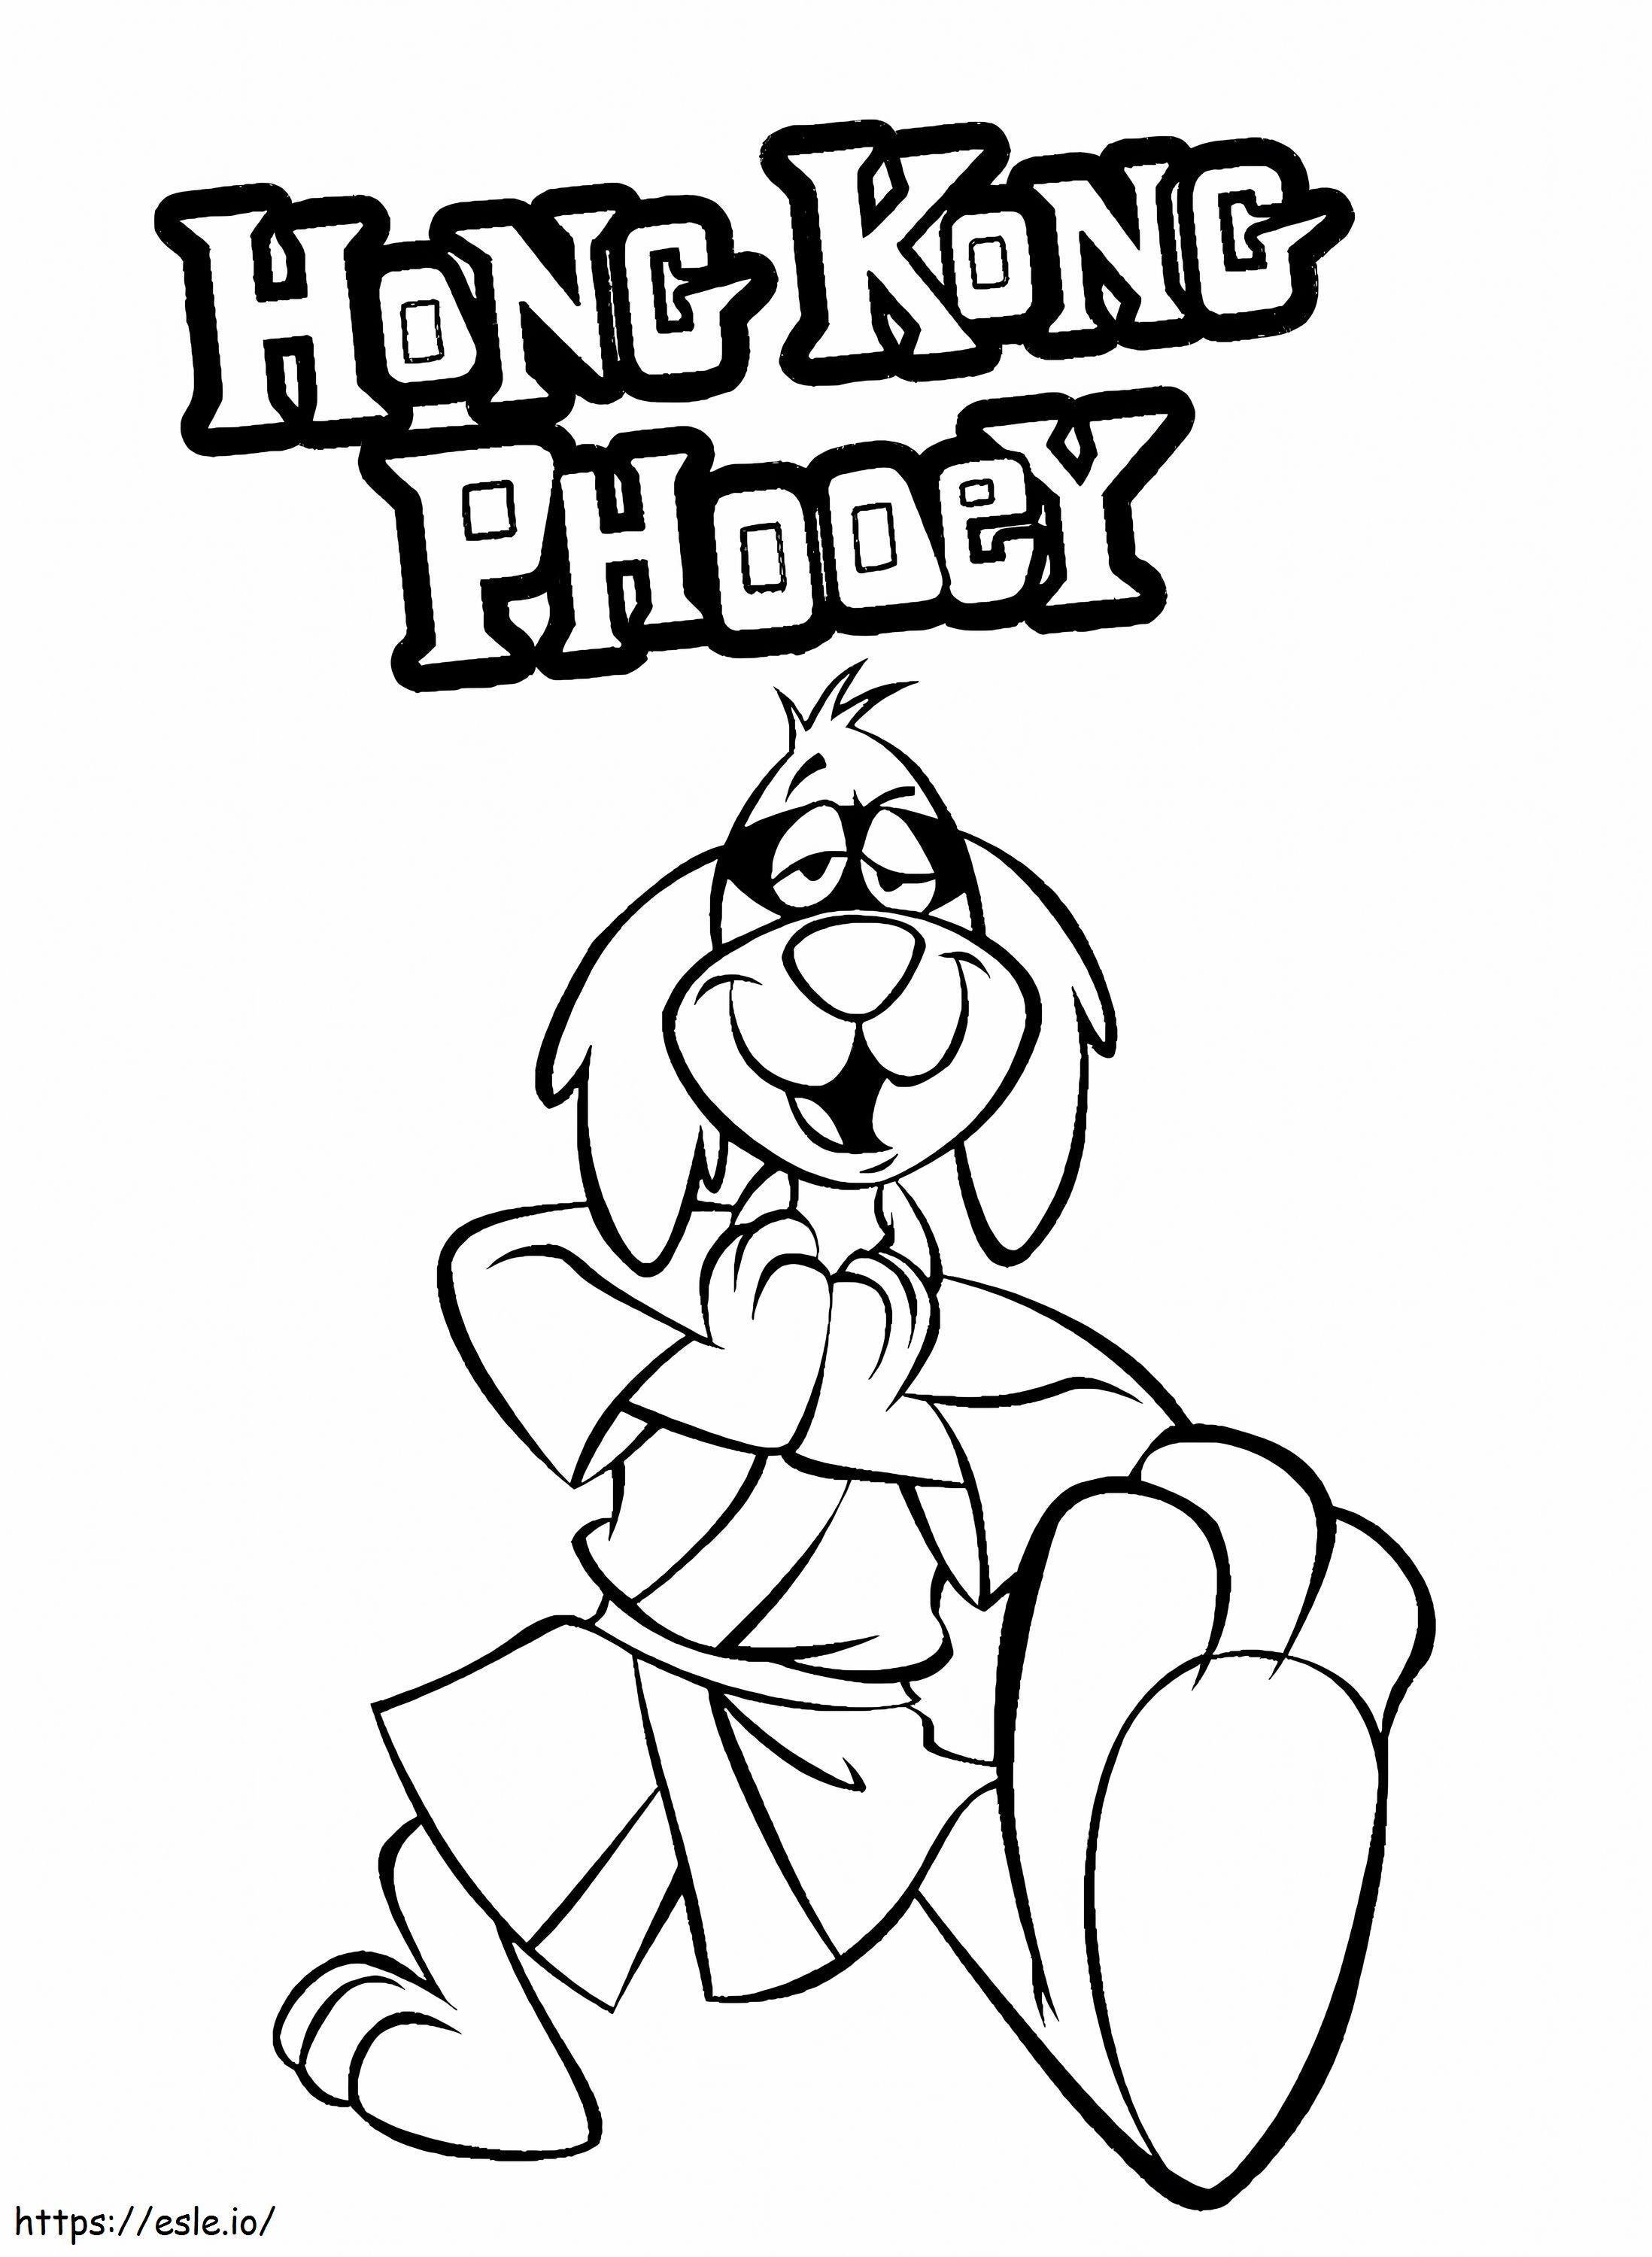 Hong Kong Phooey 3 coloring page